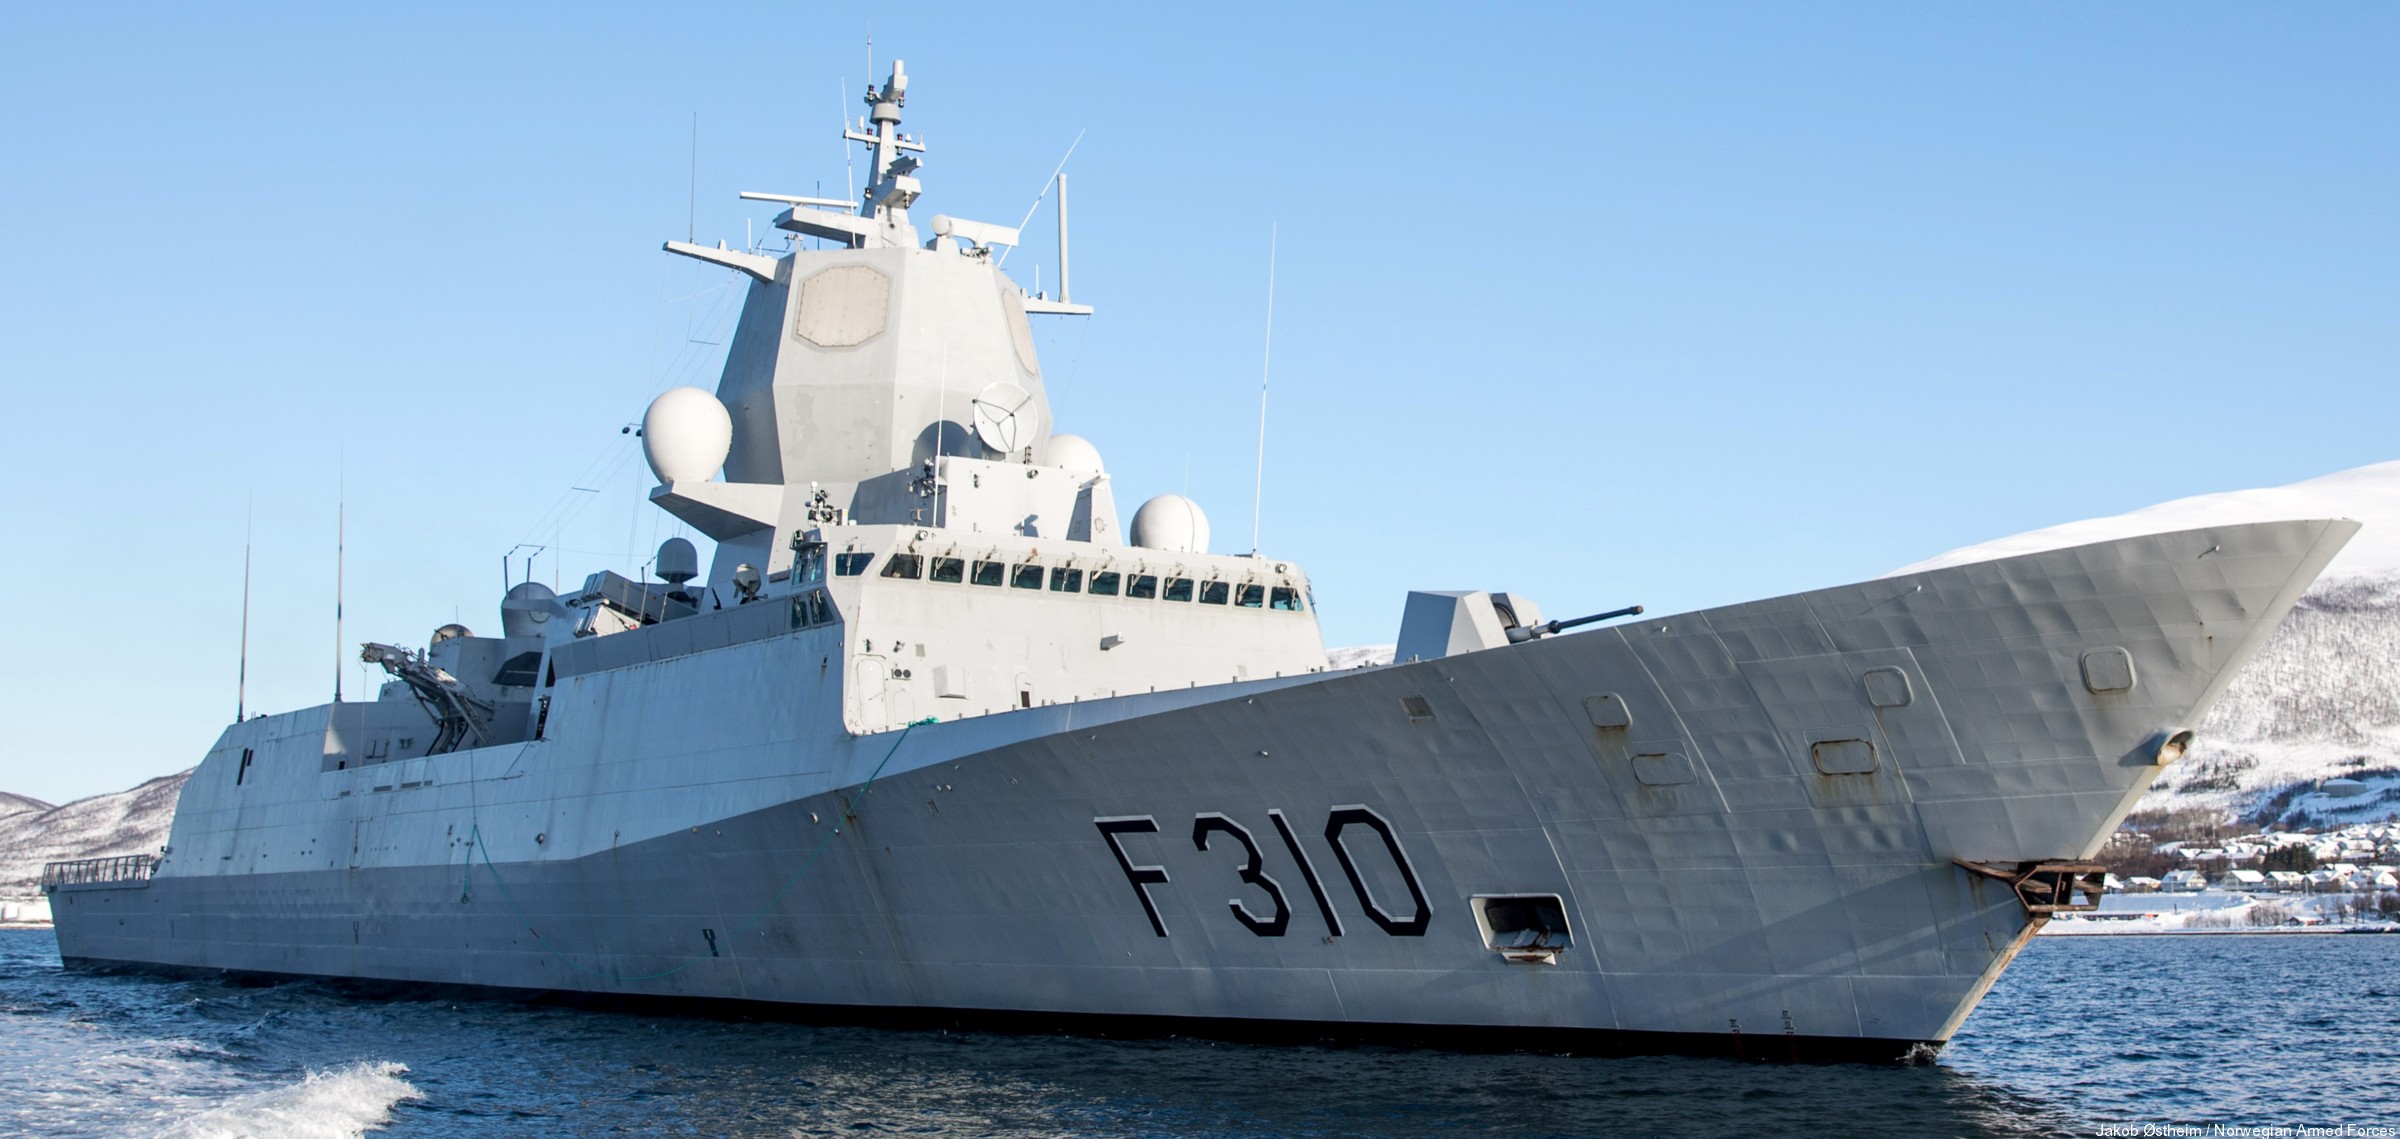 f-310 fridtjof nansen hnoms knm frigate royal norwegian navy sjoforsvaret 04